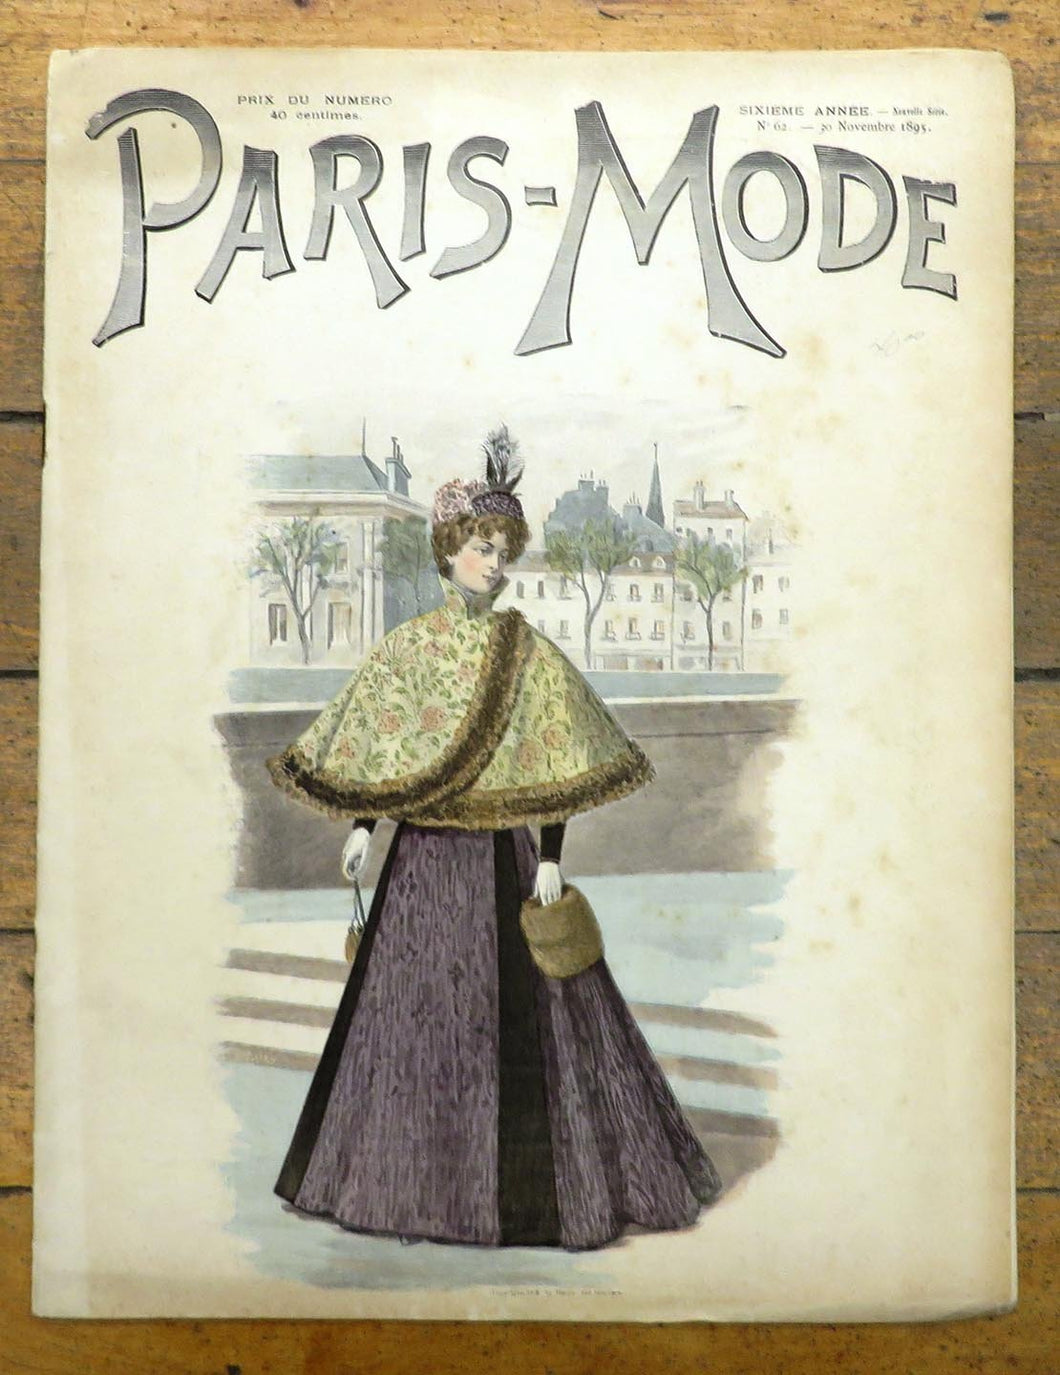 Paris-Mode, 30 Novembre 1895